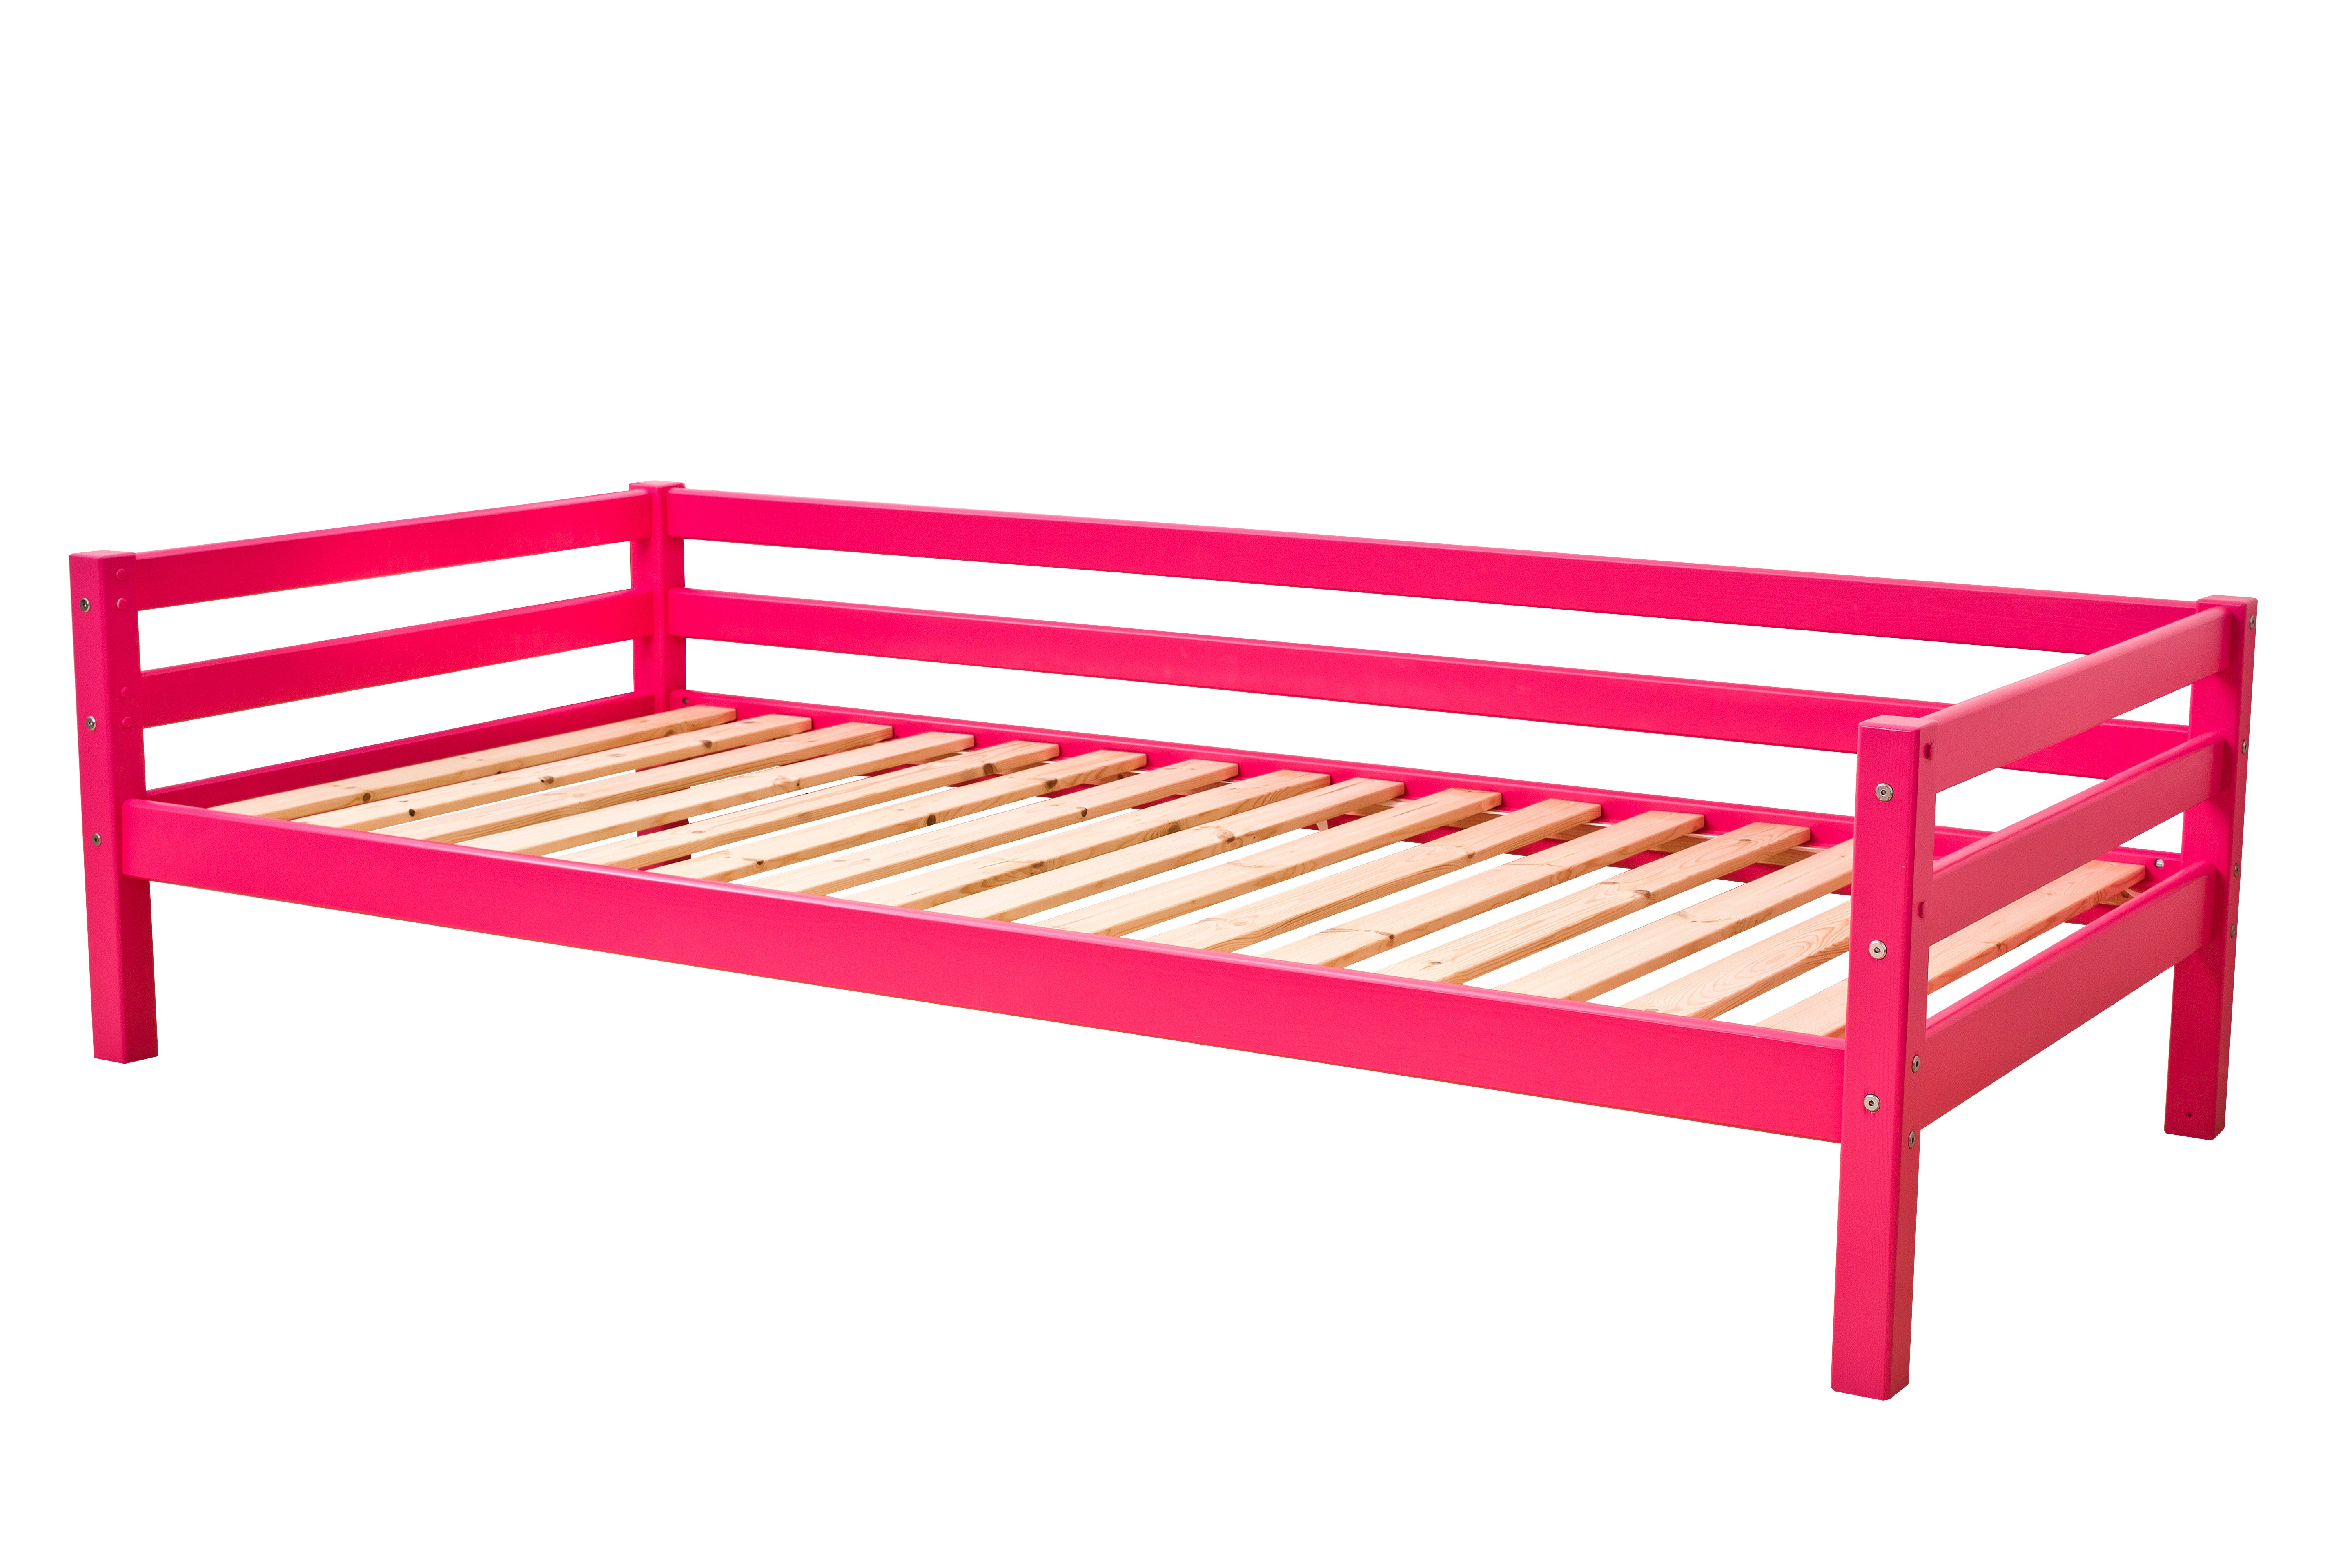 Outlet: ECO Dream juniorseng 90x200 cm med sengehest, Pink